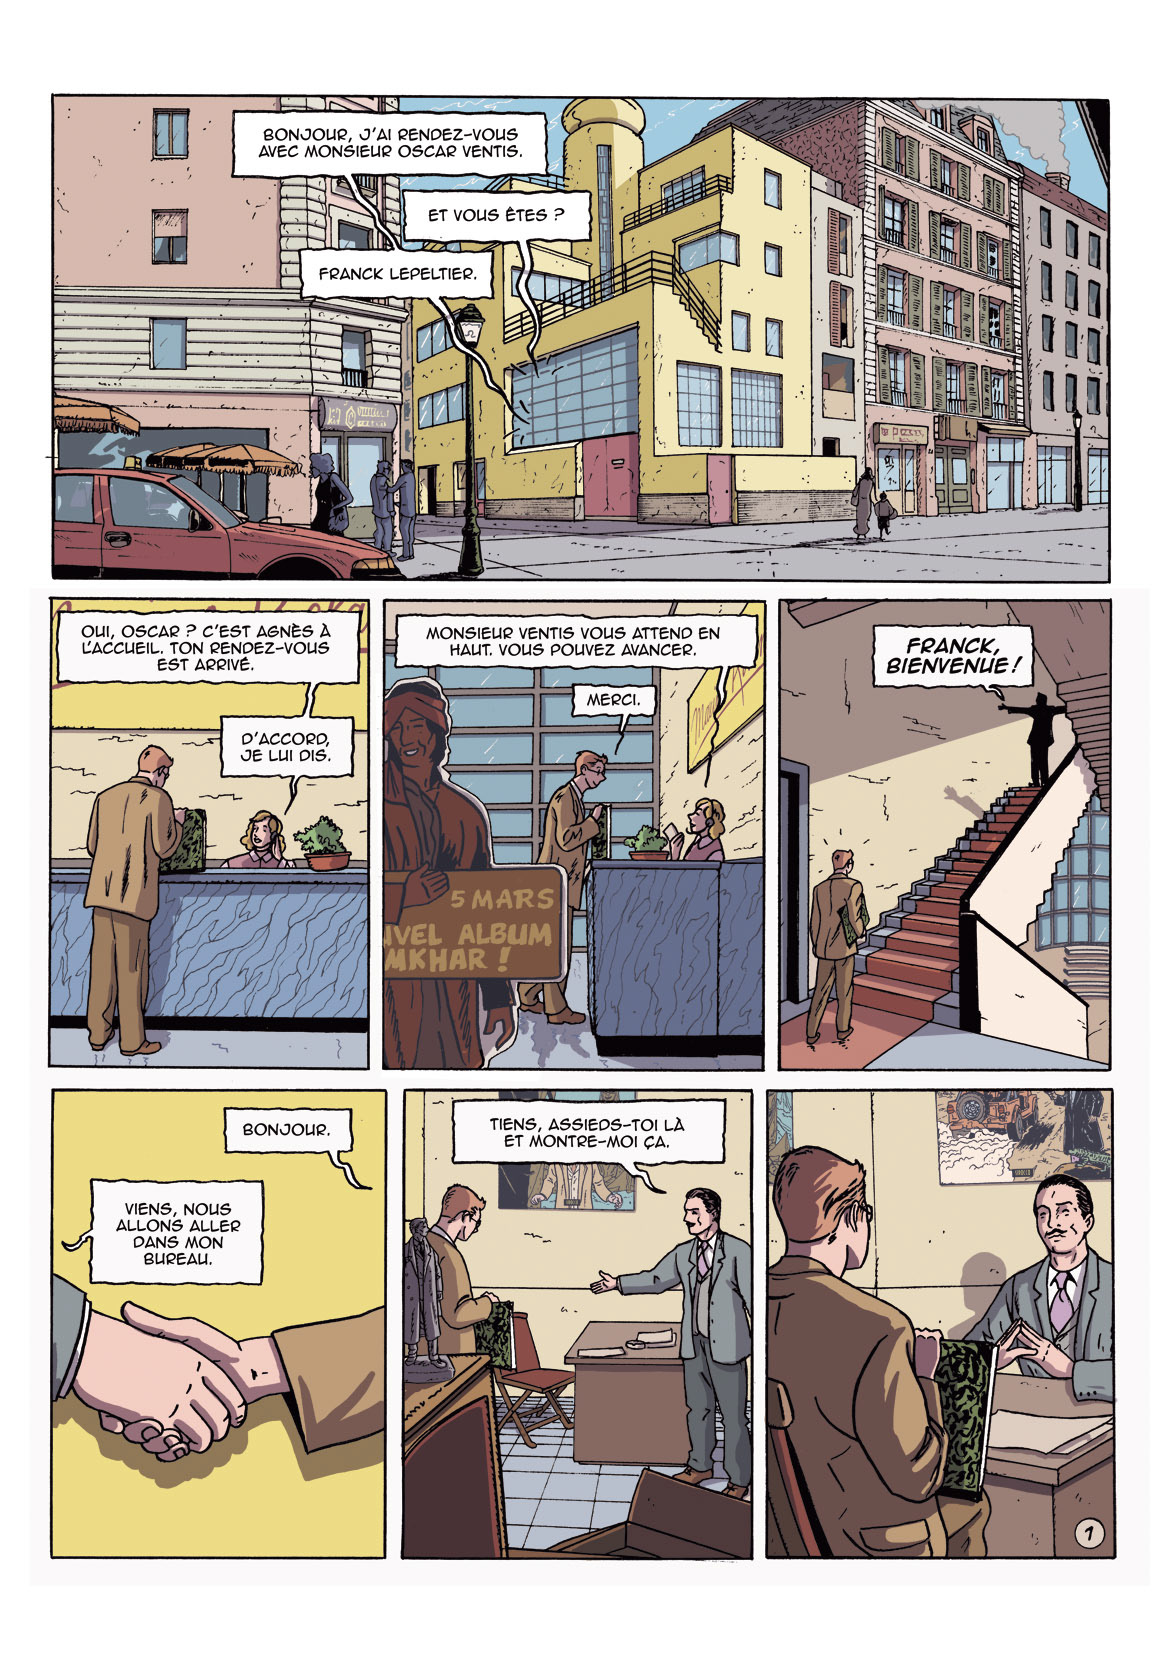 ligne claire âge d'or Clear Line Style comics Europe Graphic Novel bande dessinée comédie comedy  studio Jacques Martin Herge